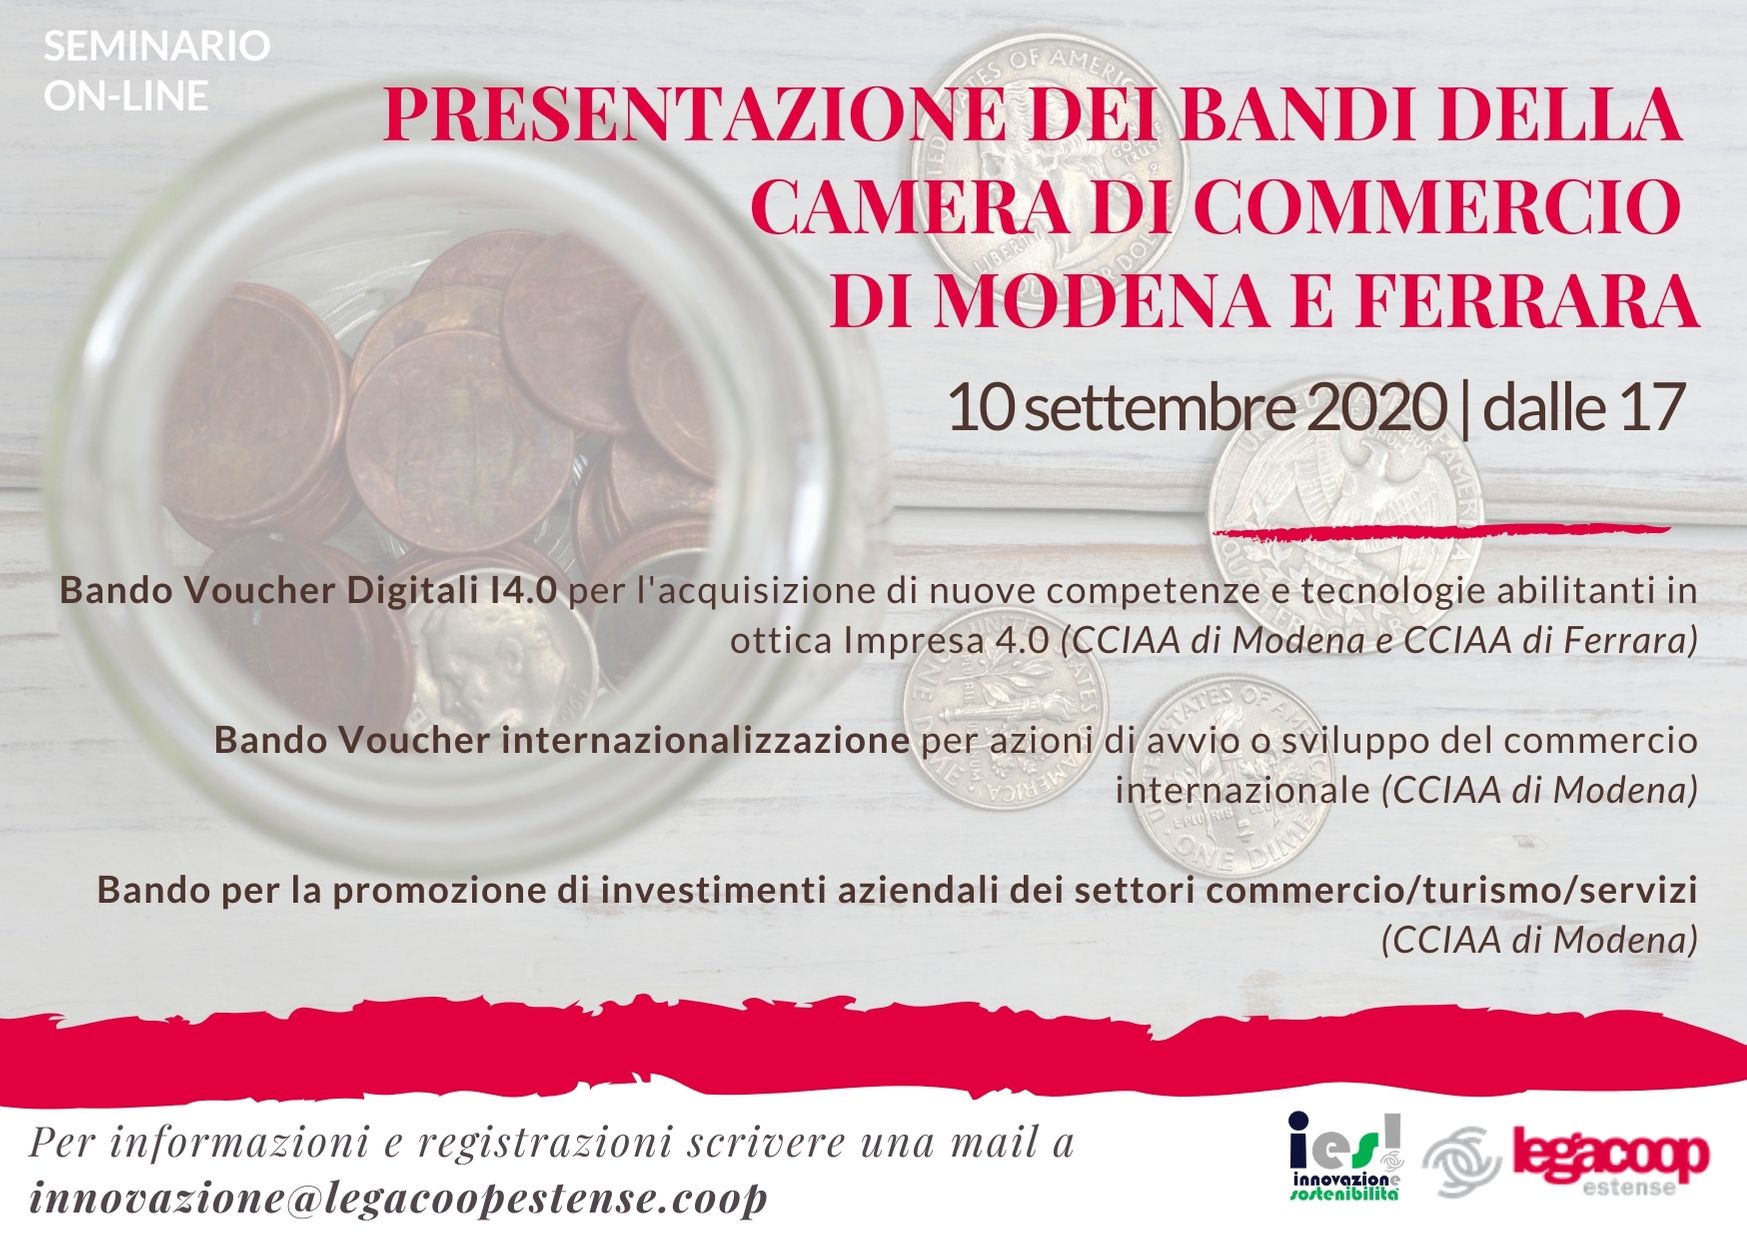 Nuovi bandi delle Camere di Commercio di Modena e Ferrara: il 10 settembre un webinar di Legacoop per presentare le opportunità per le imprese